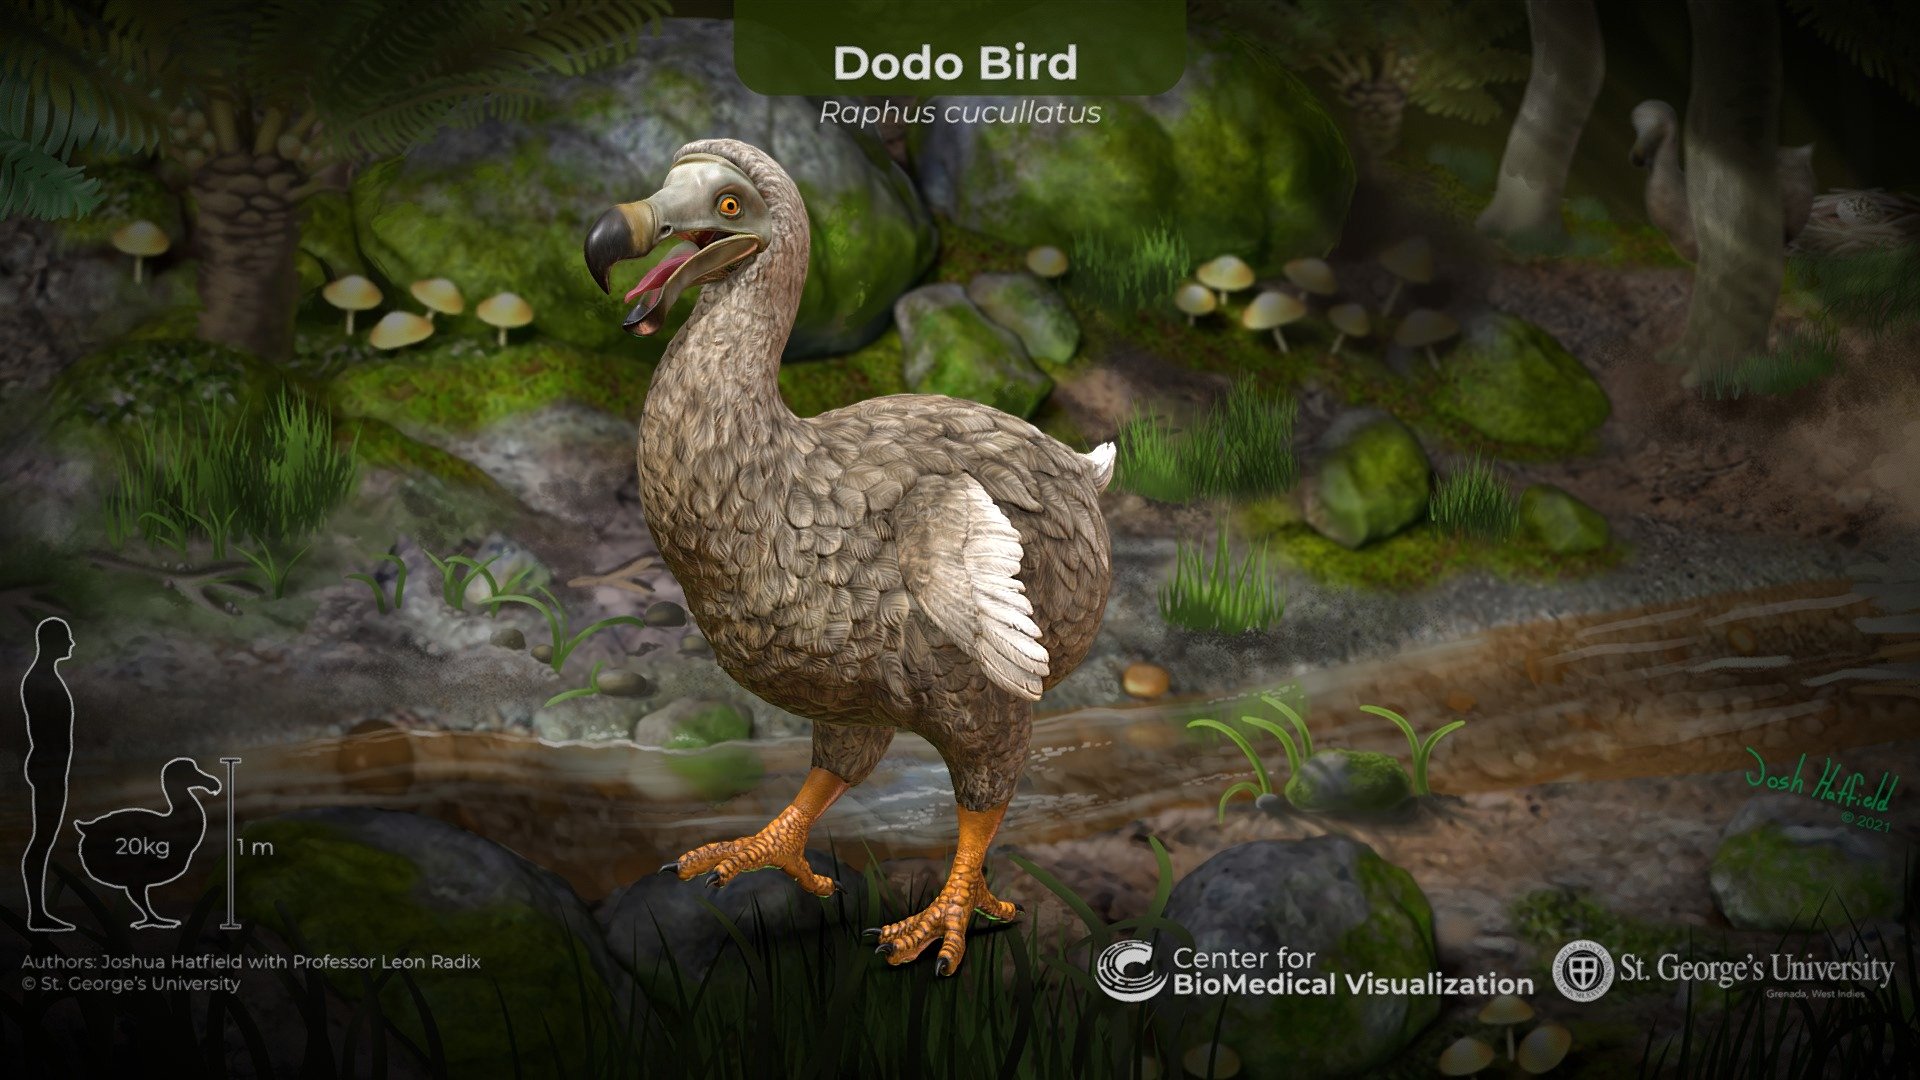 the dodo bird